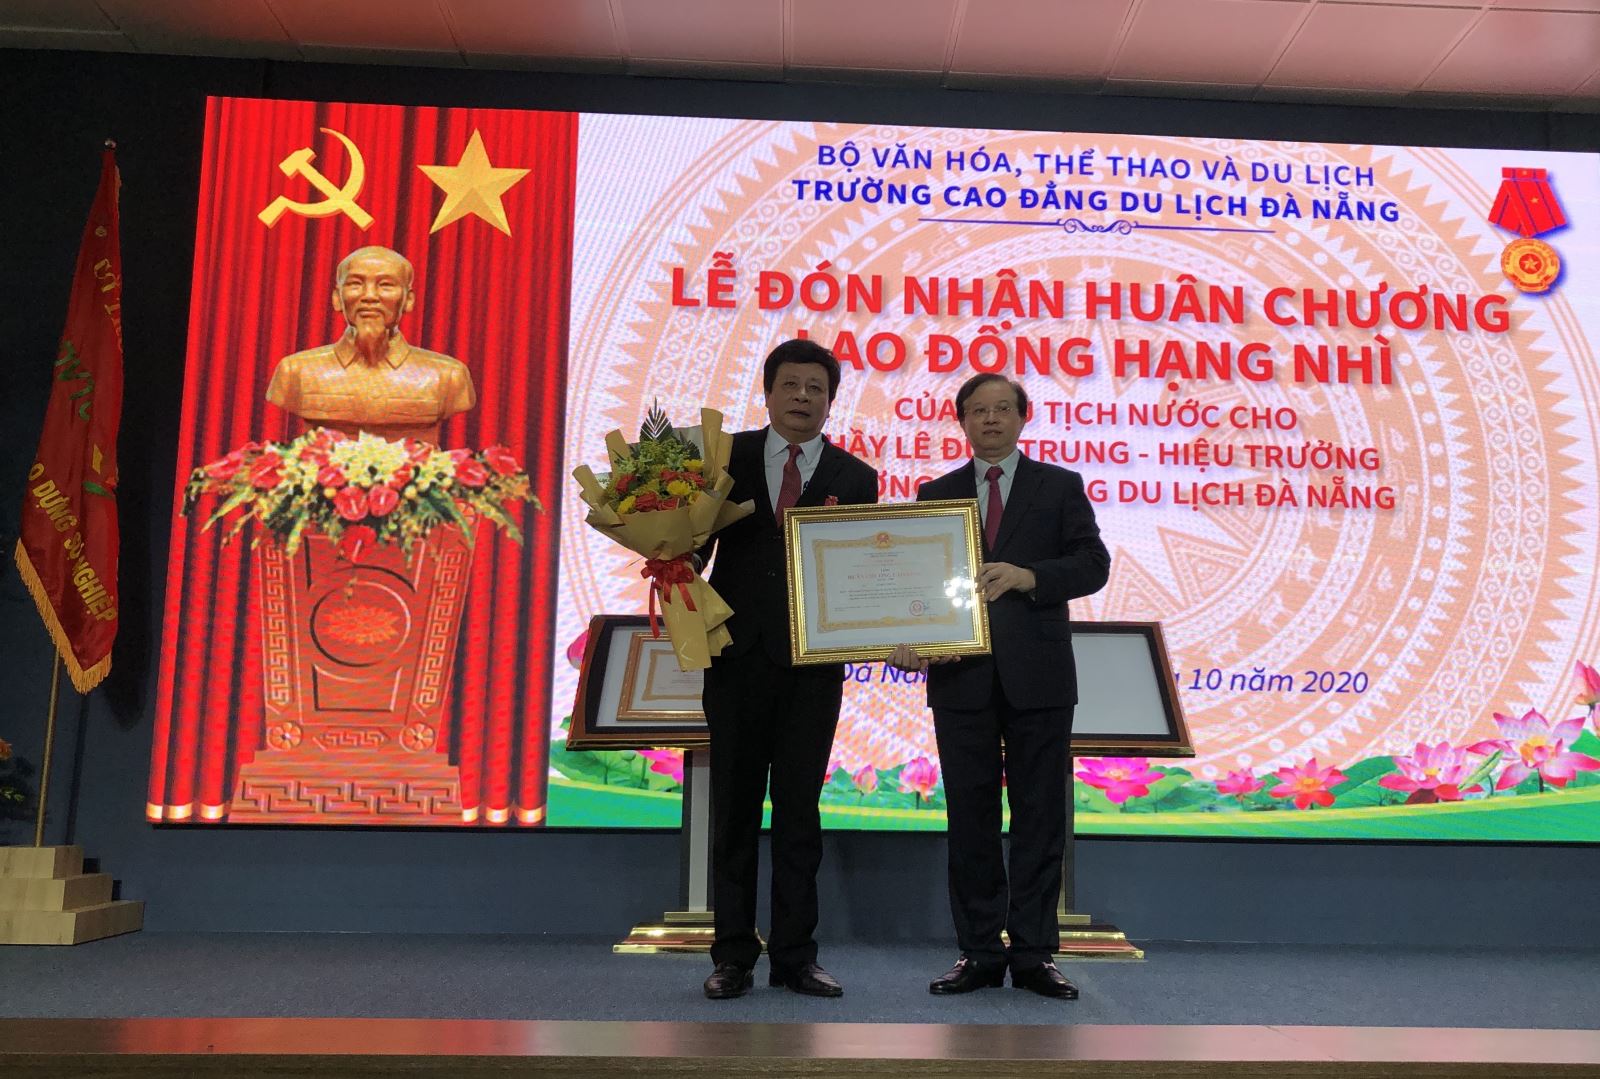 Trường Cao đẳng Du lịch Đà Nẵng đón nhận Huân chương Lao động và khai giảng năm học mới